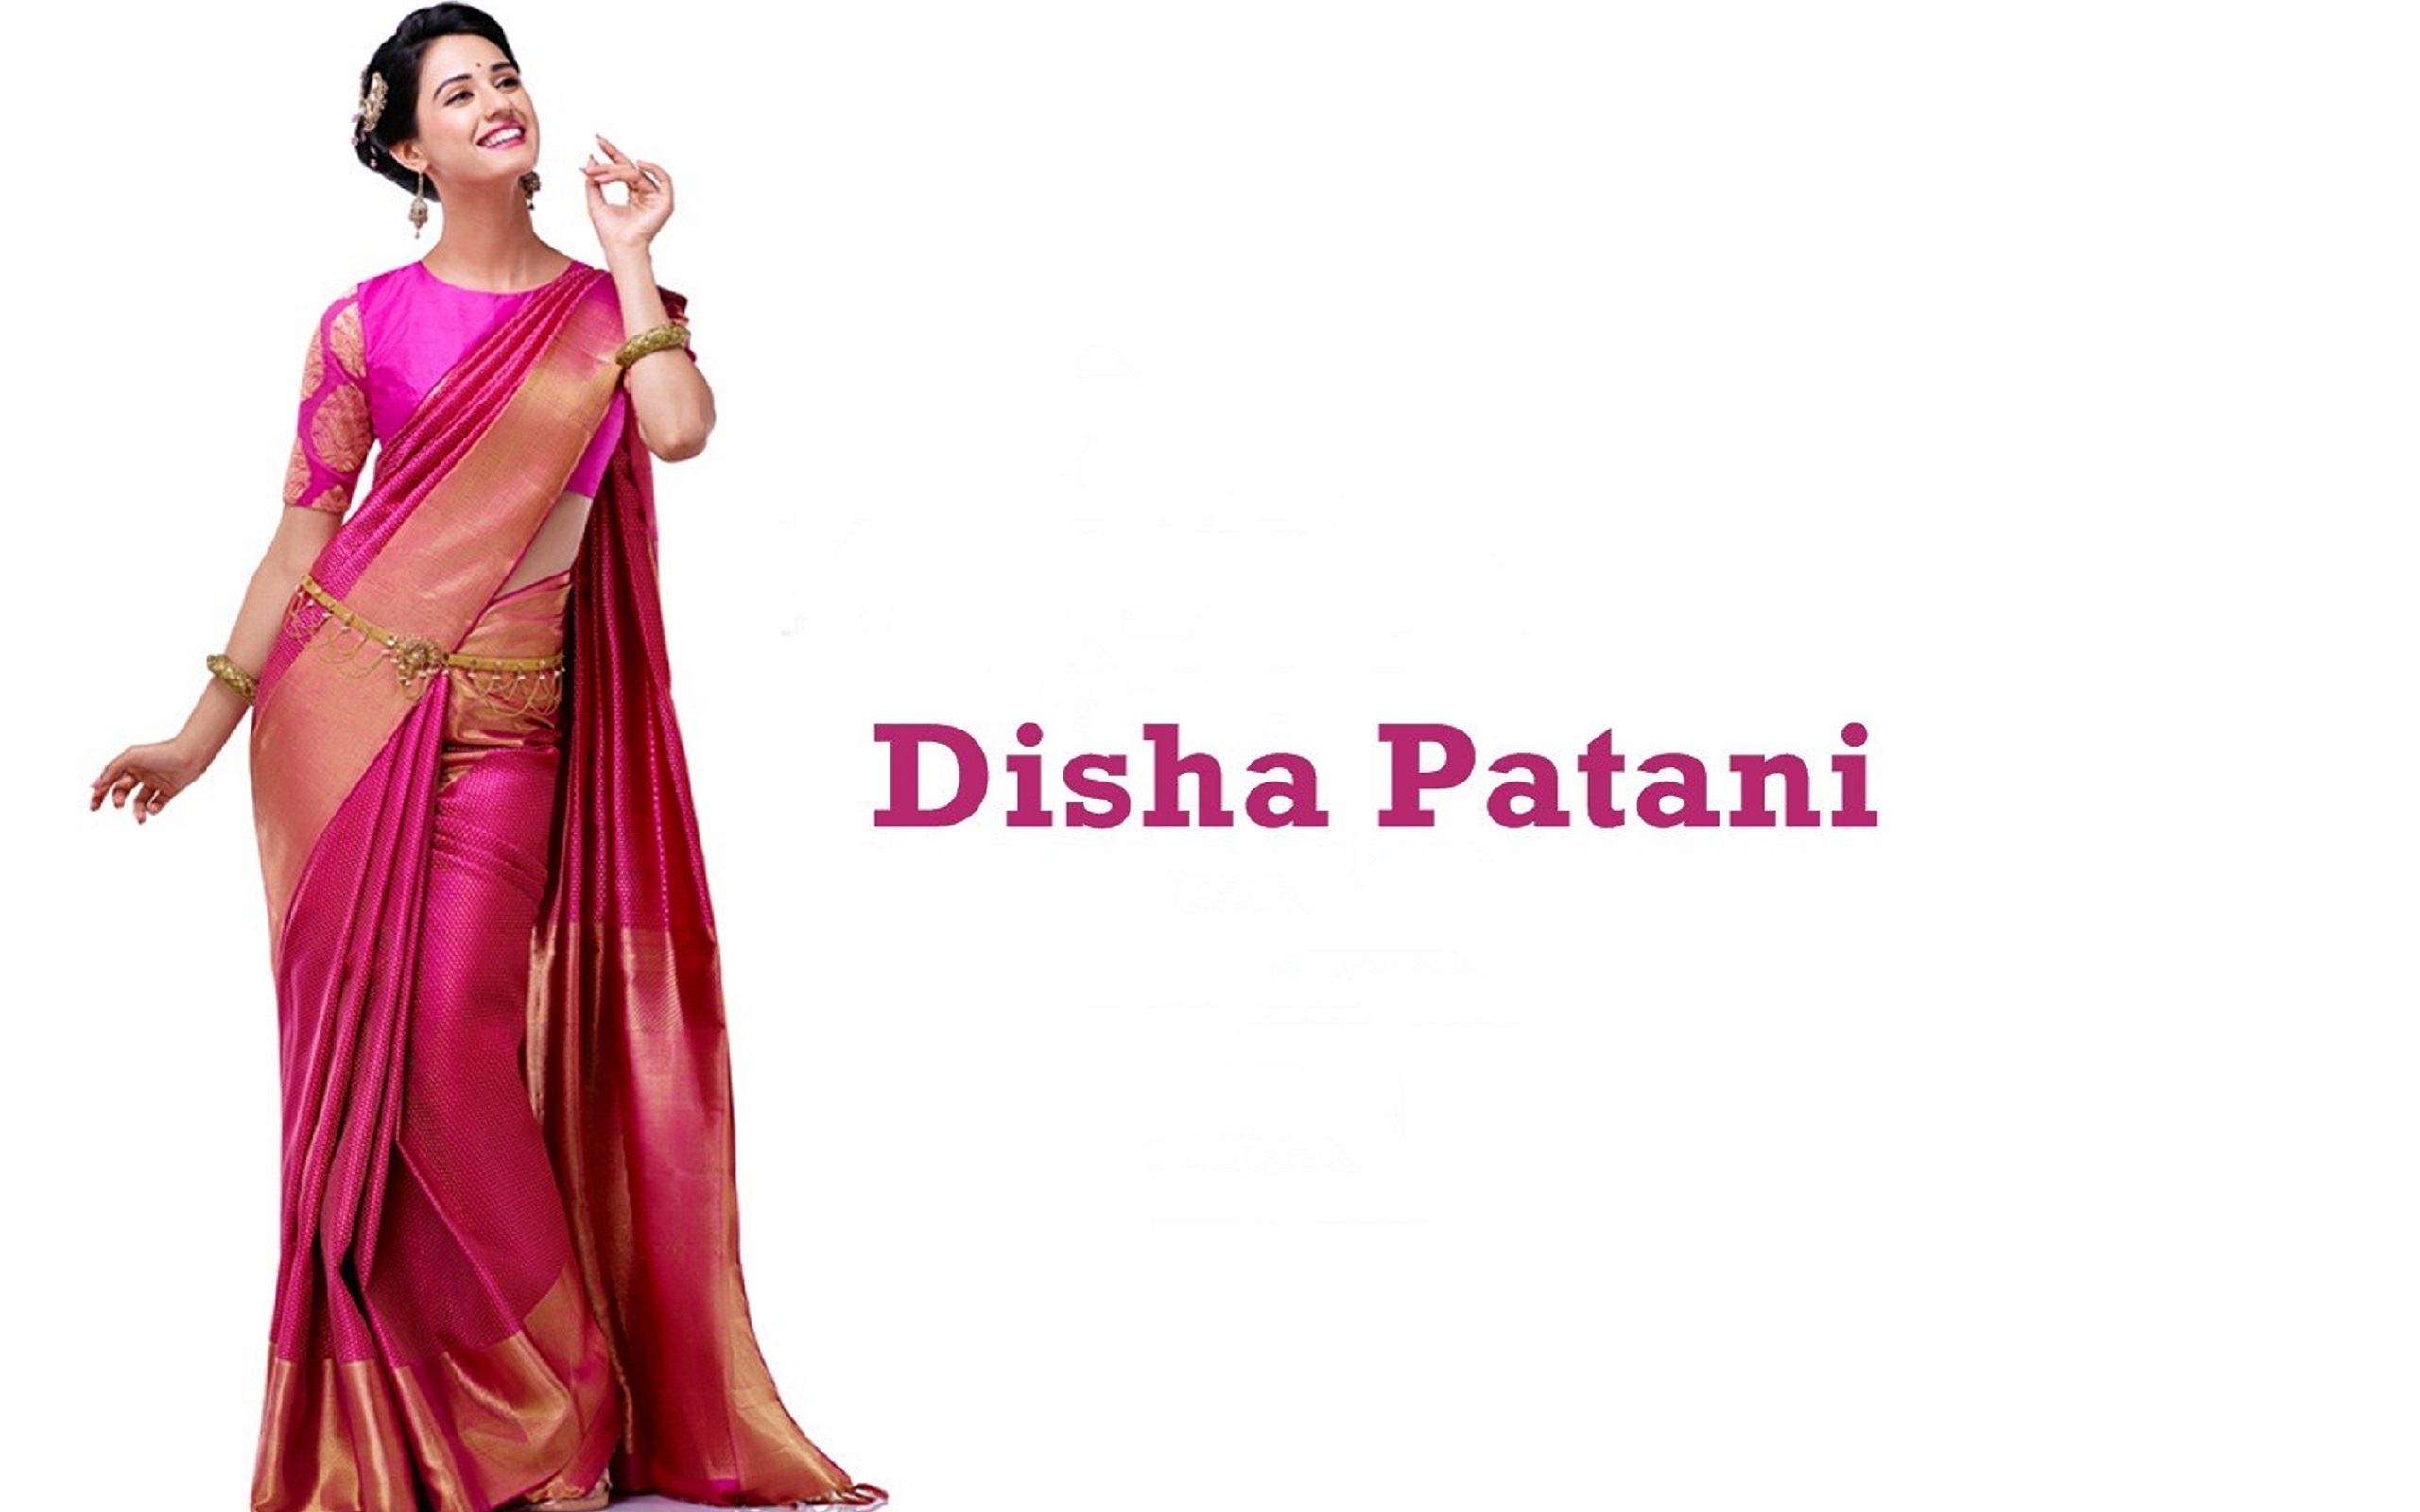 Hot Disha Patani Height Weight Age Affairs Bra Size Wiki